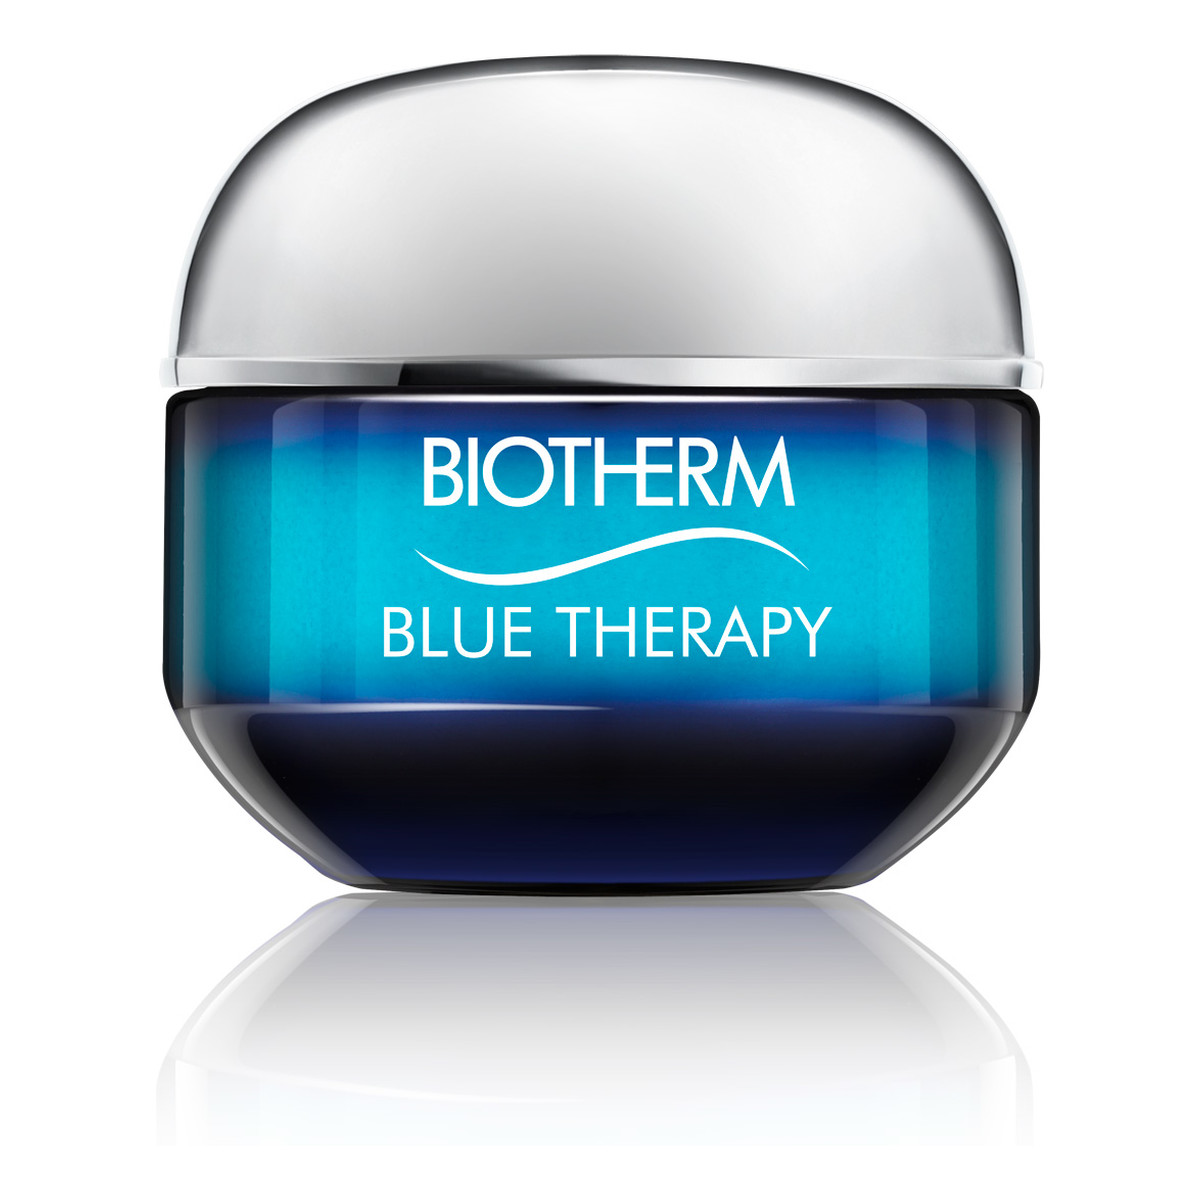 Biotherm Blue Therapy kompleksowy krem przeciwzmarszczkowy do skóry suchej 50ml